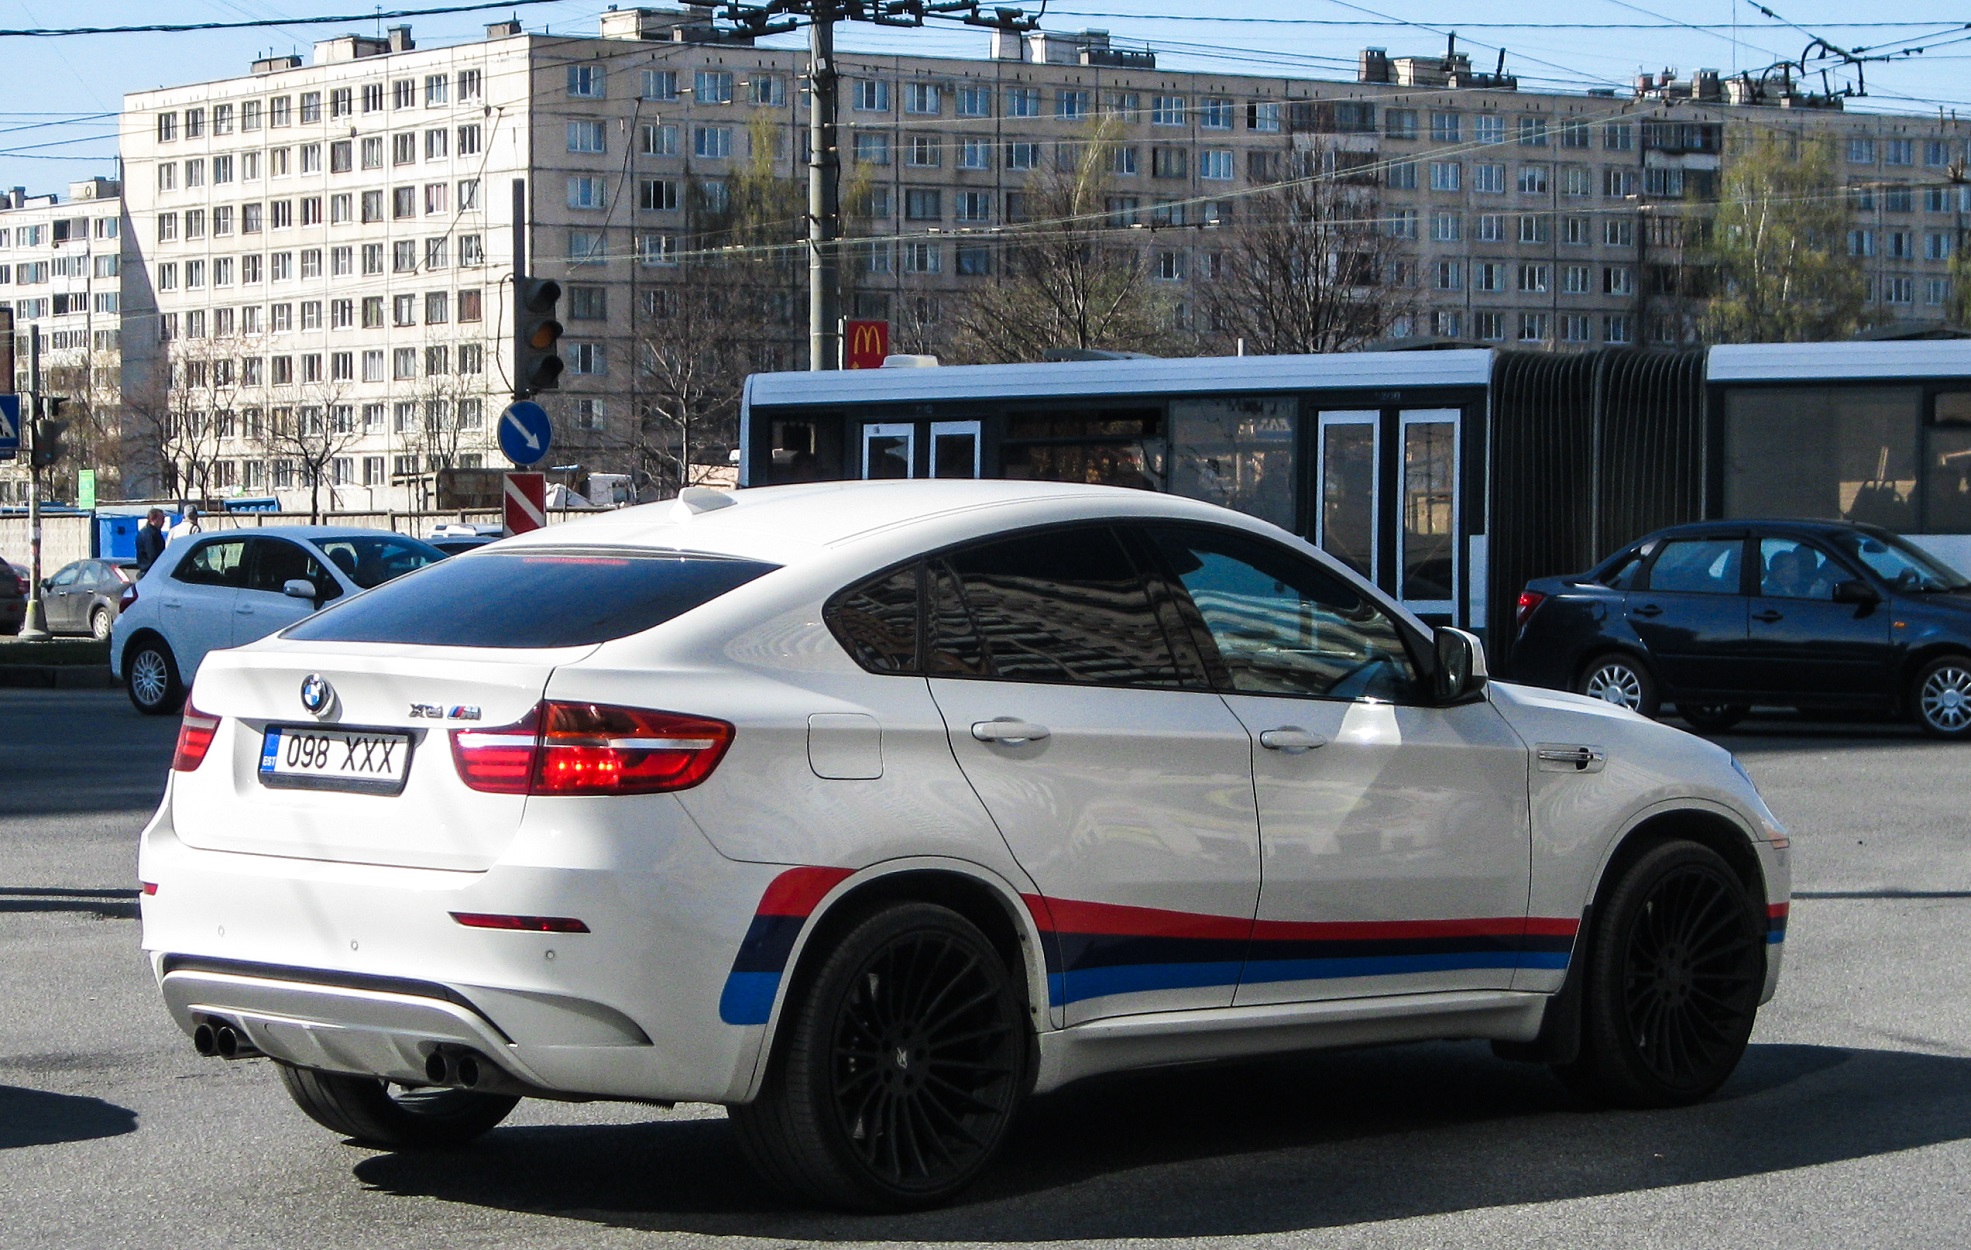 ФОТО ⟩ Ехавший по шоссе Таллинн-Тарту водитель заметил лежащий в кювете BMW